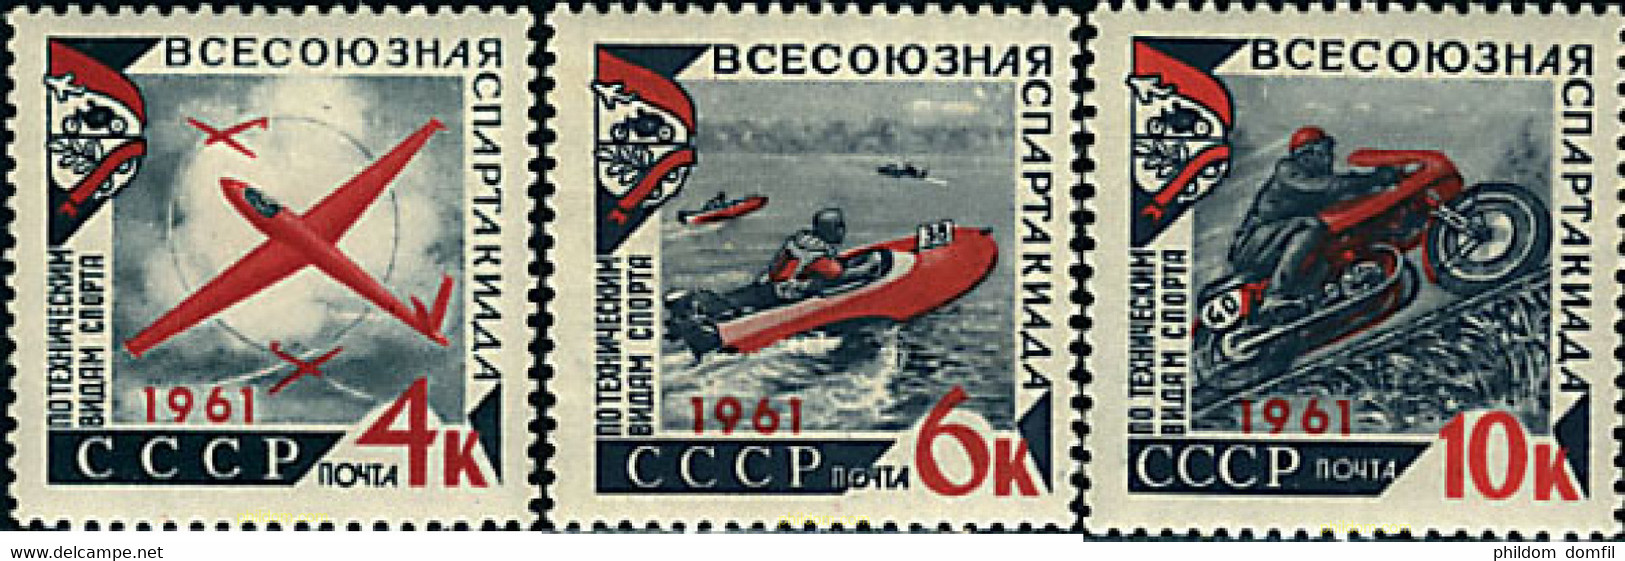 62993 MNH UNION SOVIETICA 1961 SPARTAKIADA SOVIETICA DE LOS DEPORTES TECNICOS - Collections